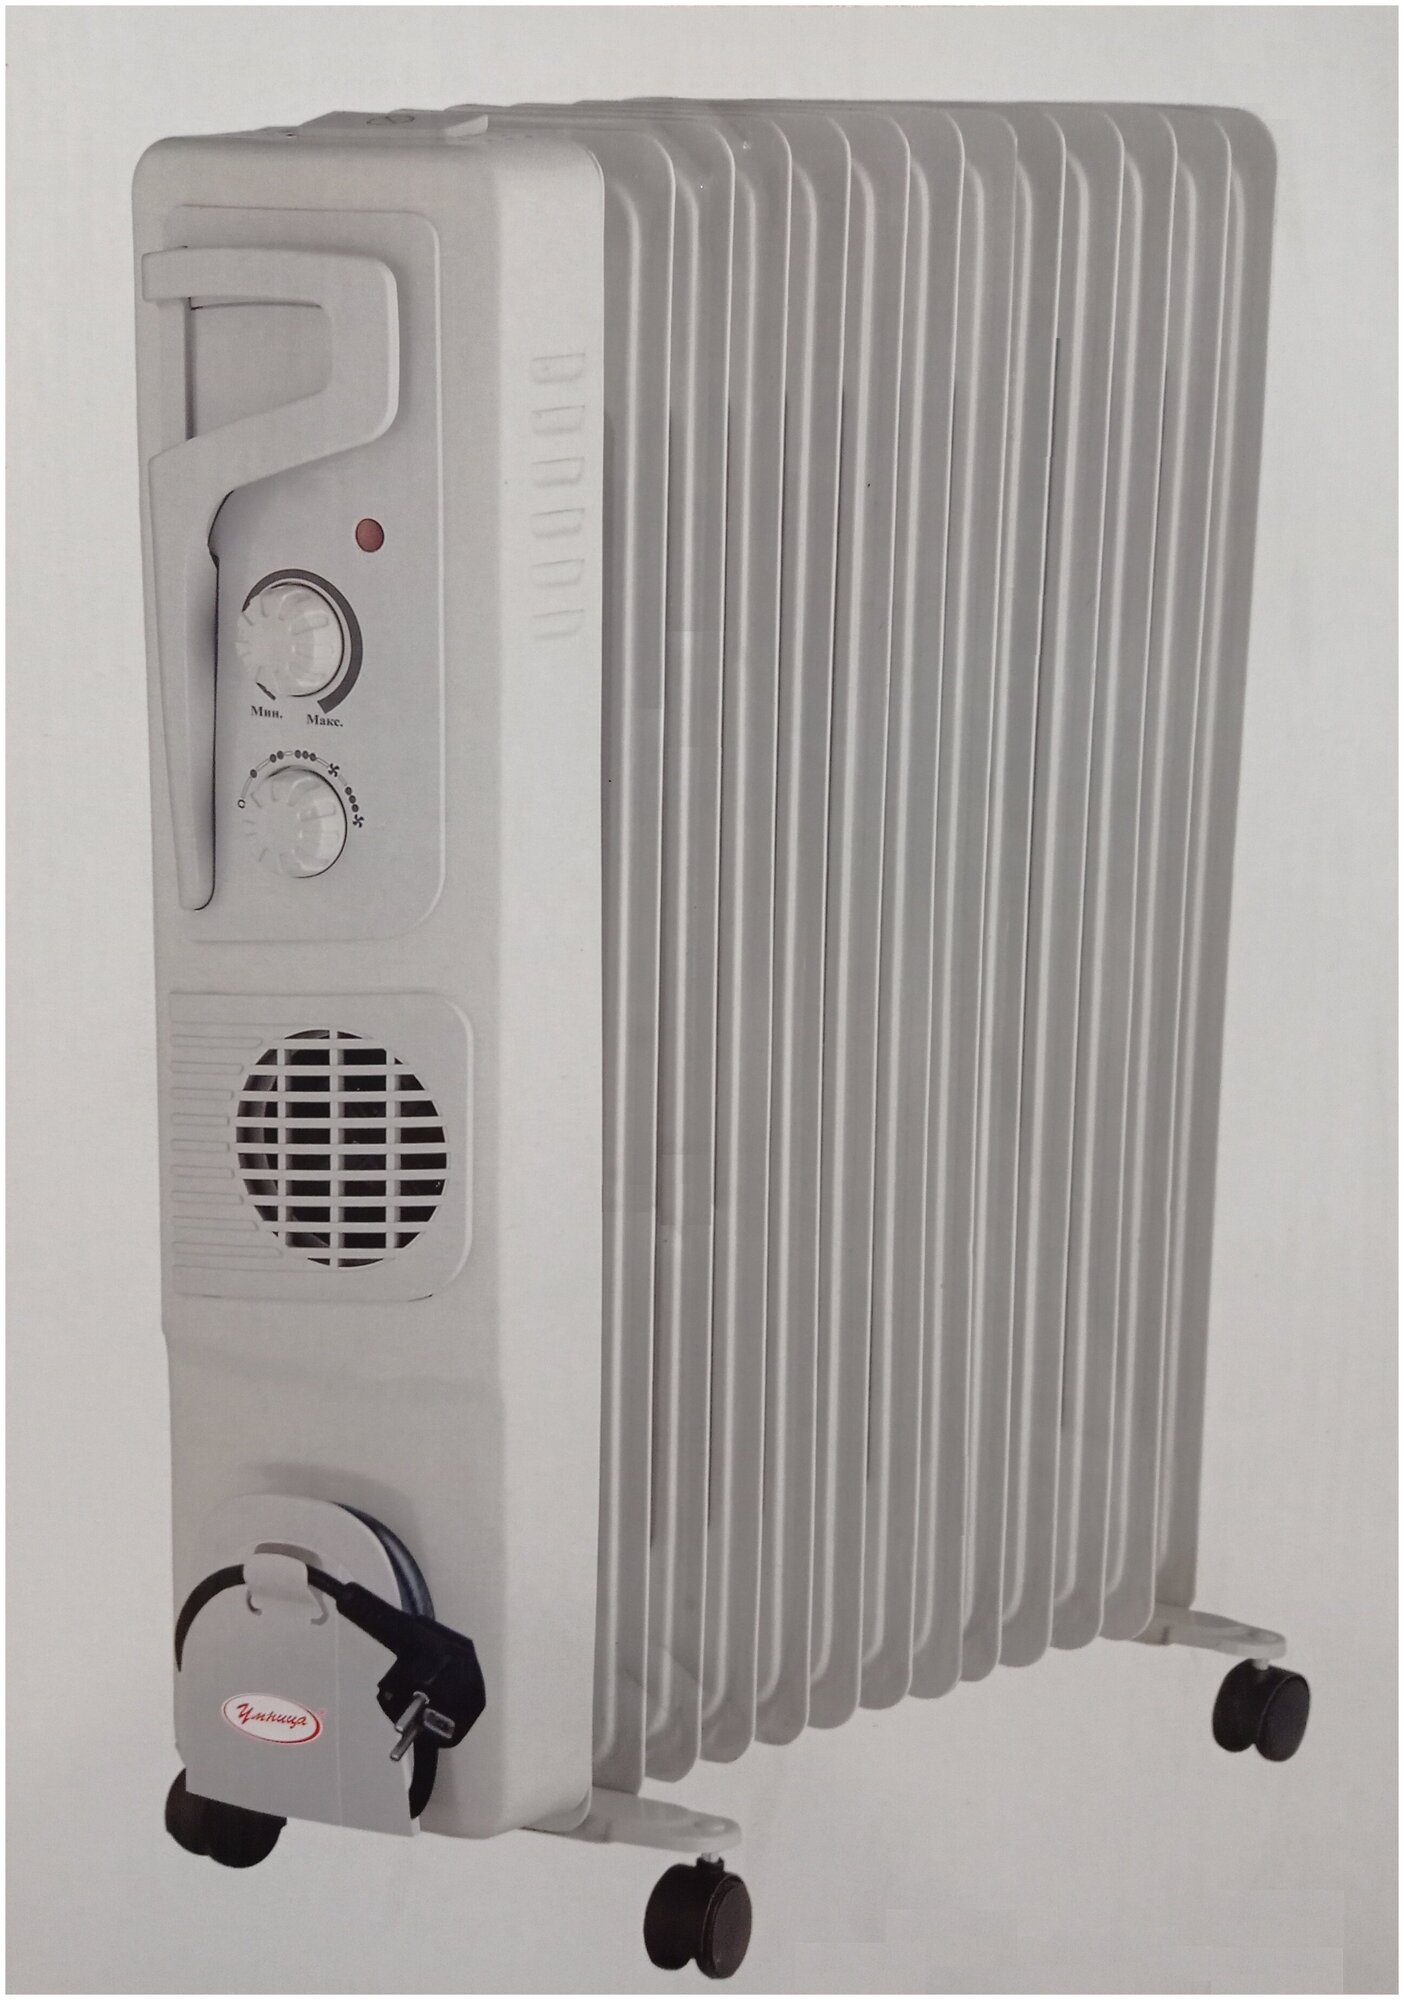 Масляный радиатор "Умница" ОМВ-13с.-2,9кВт 13 секций с вентилятором, серый цвет.